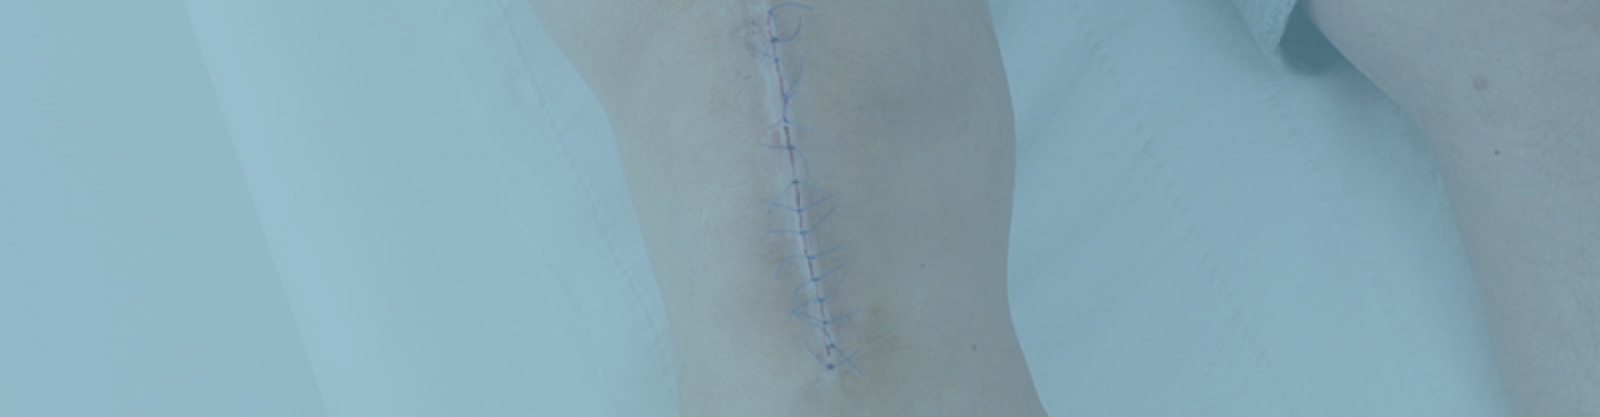 Imagen de una herida con puntos cicatrizando